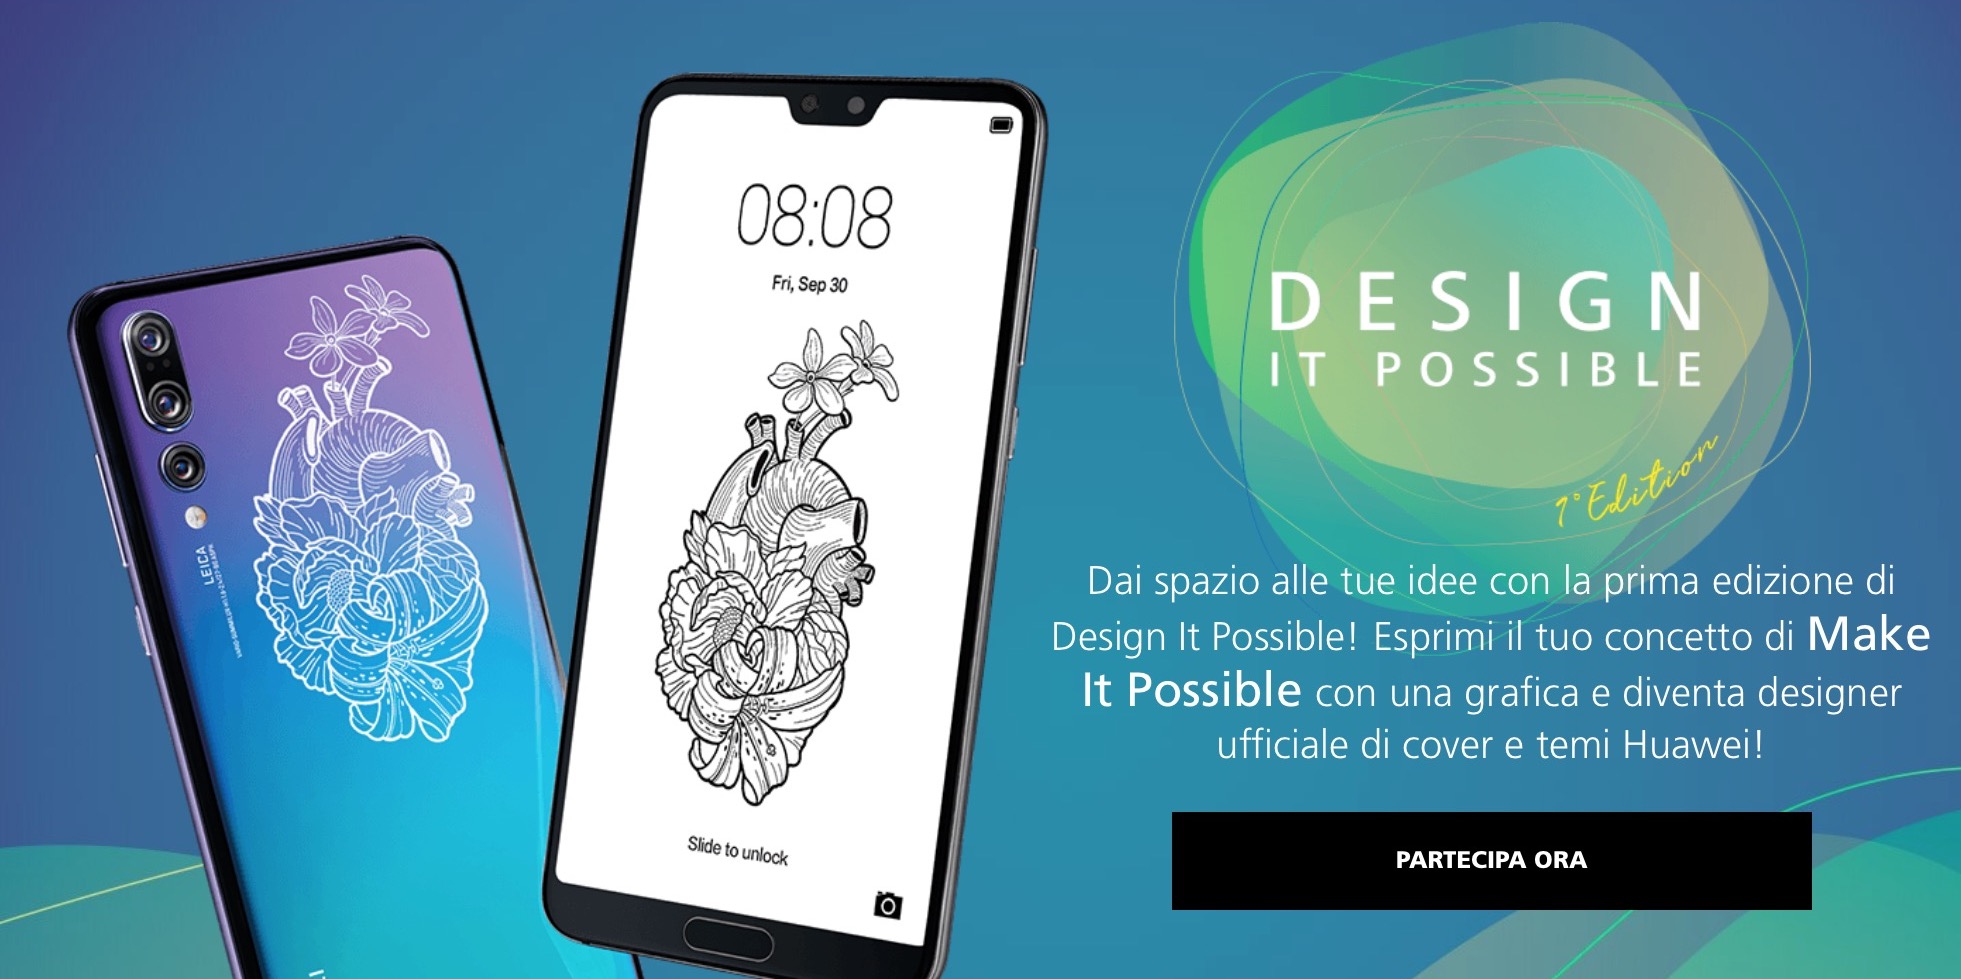 Design It Possible: la creatività al potere nel nuovo contest Huawei